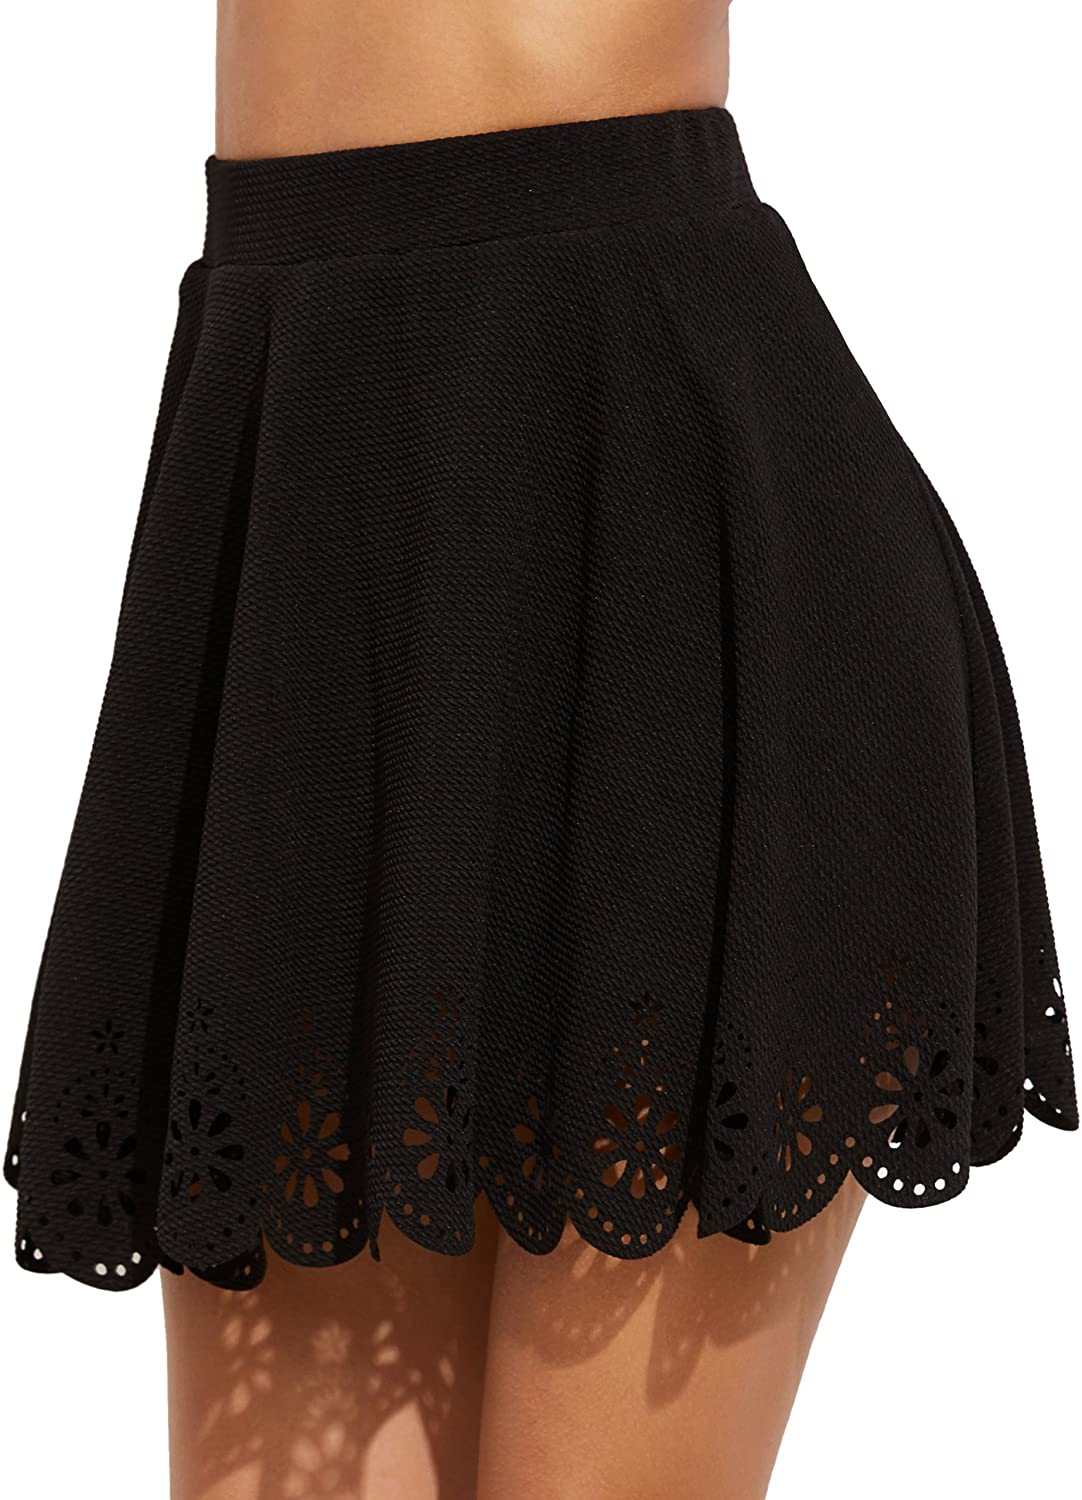 SheIn Women's Basic Solid Flared Mini Skater Skirt | eBay